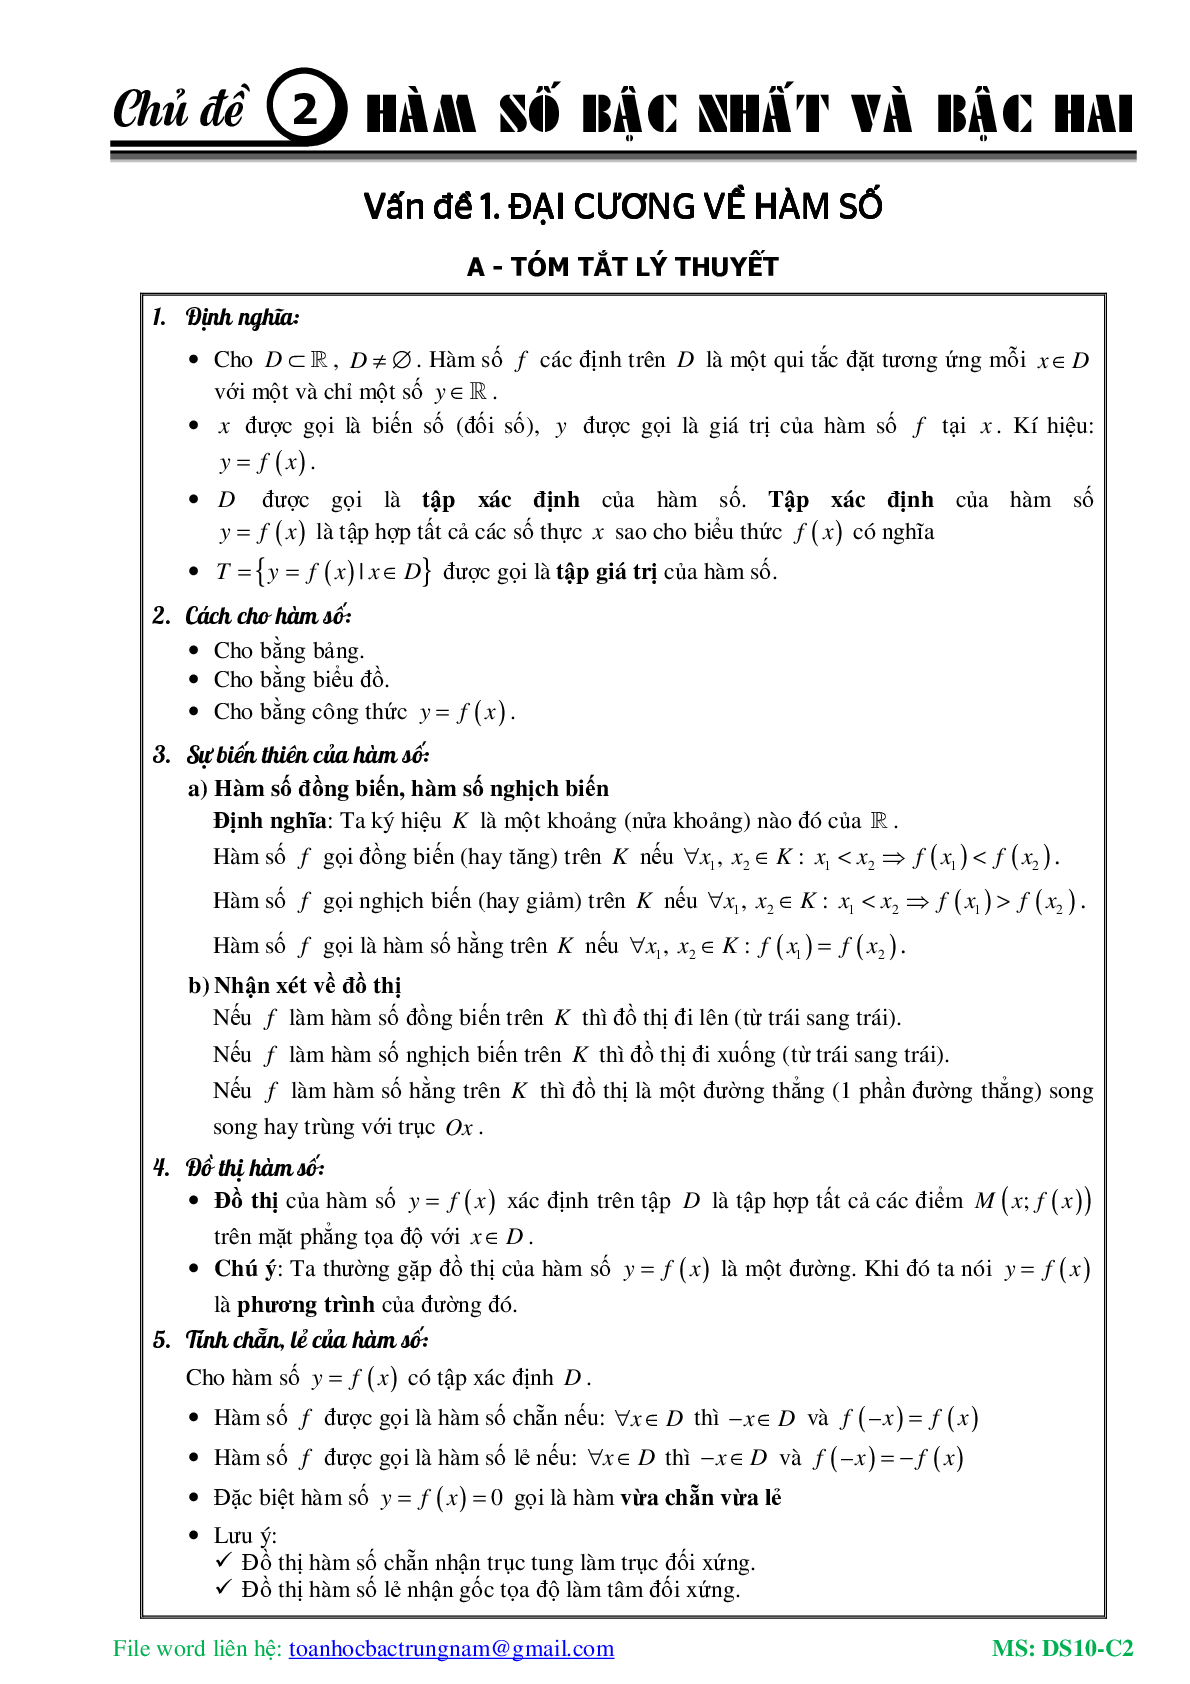 Chuyên đề về hàm số bậc nhất và hàm số bậc hai (trang 2)